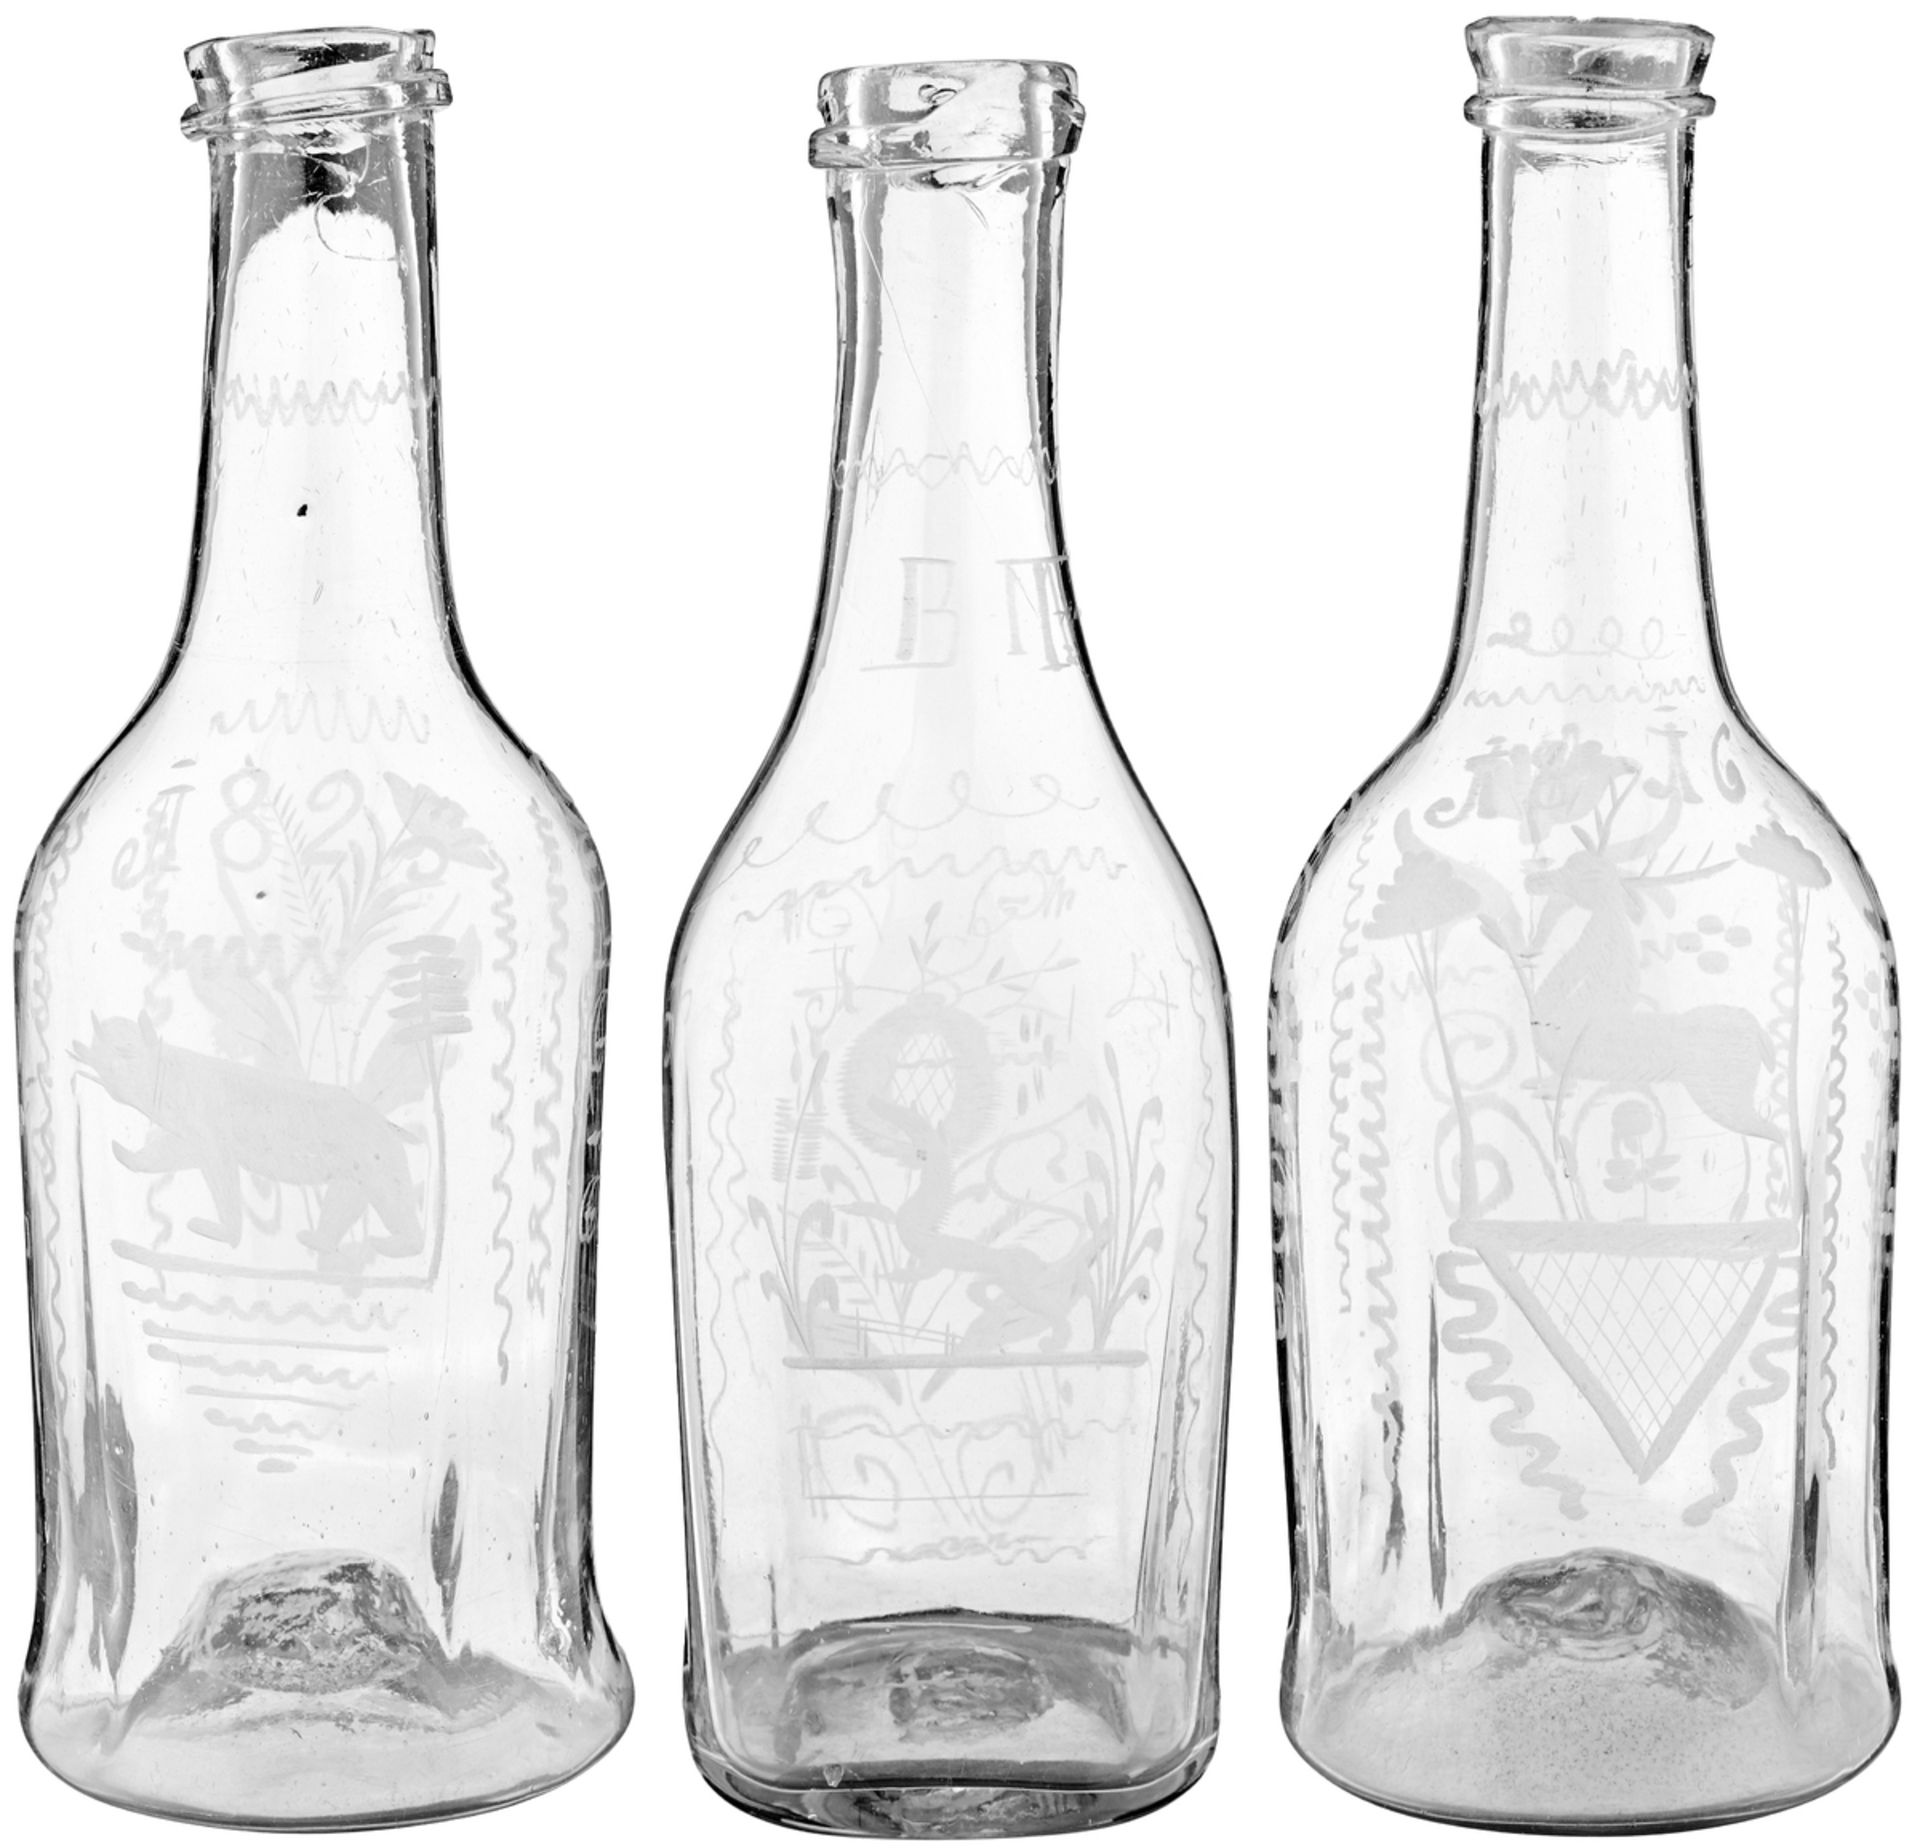 2 MassflaschenWohl Flühli, datiert 1816 und 1844. Farbloses, in die Form geblasenes Glas.